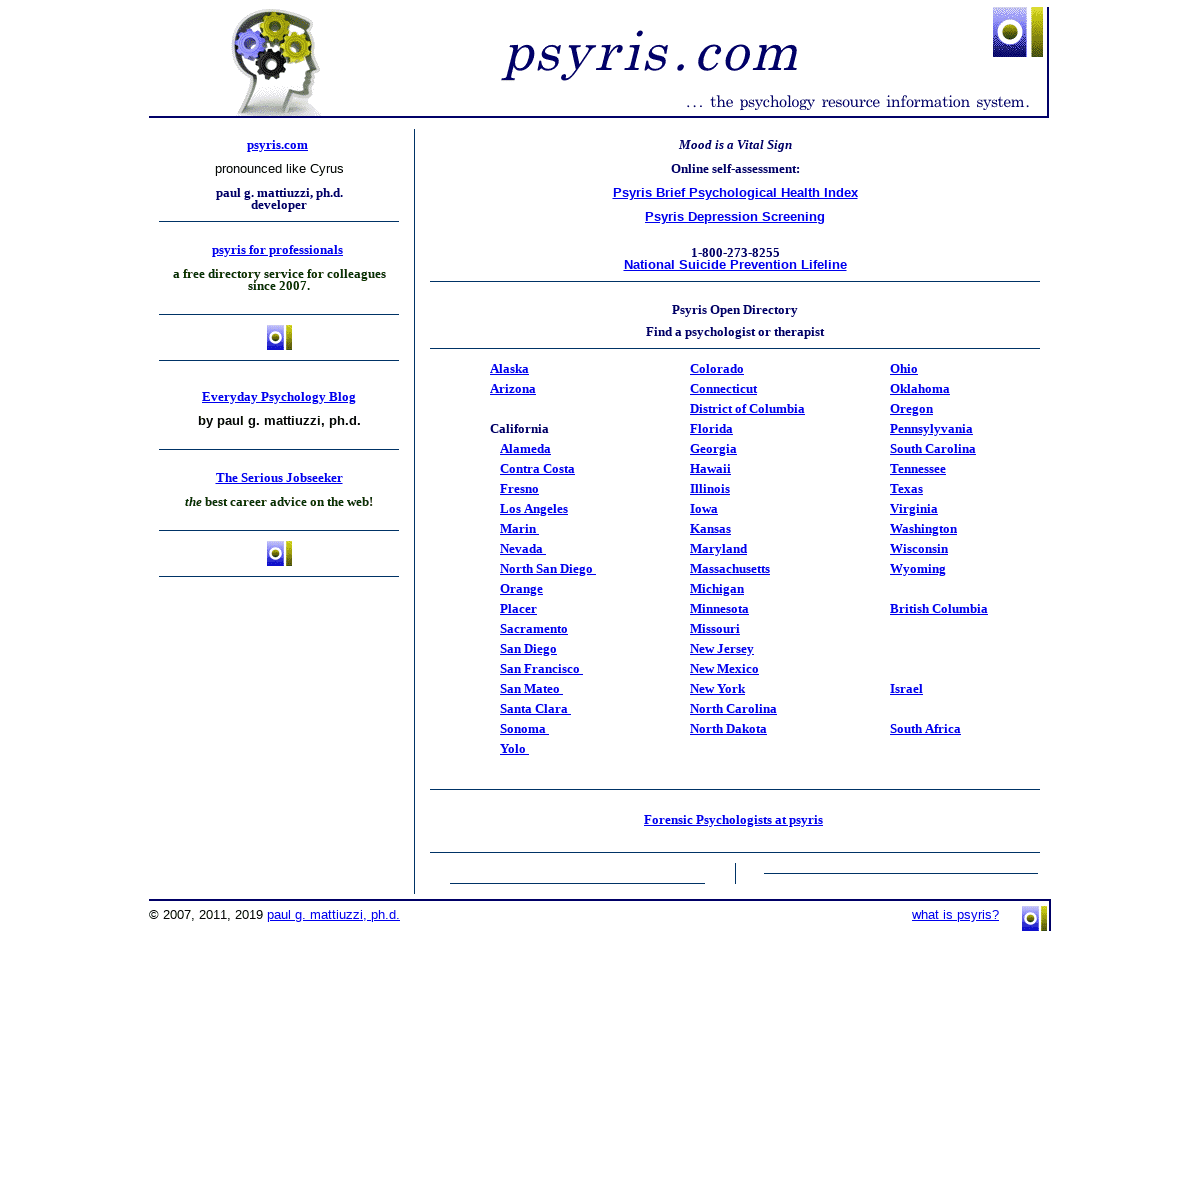 psyris.com